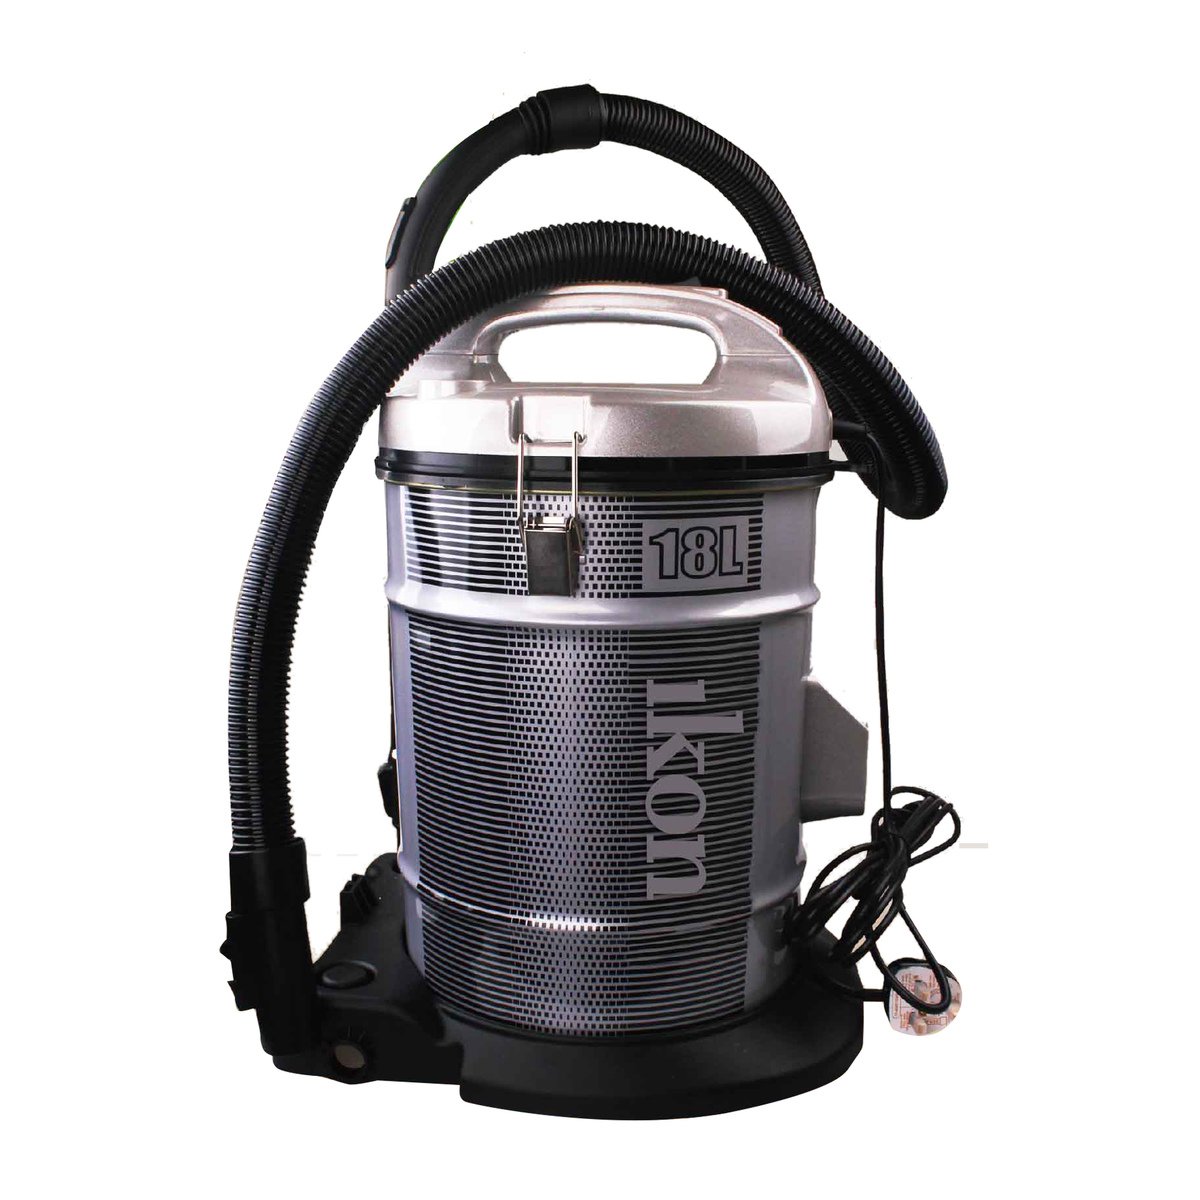 اشتري قم بشراء ايكون مكنسة كهربائية اسطوانية 1800 واط IK-403 Online at Best Price من الموقع - من لولو هايبر ماركت Drum Vacuum Cleaners في السعودية